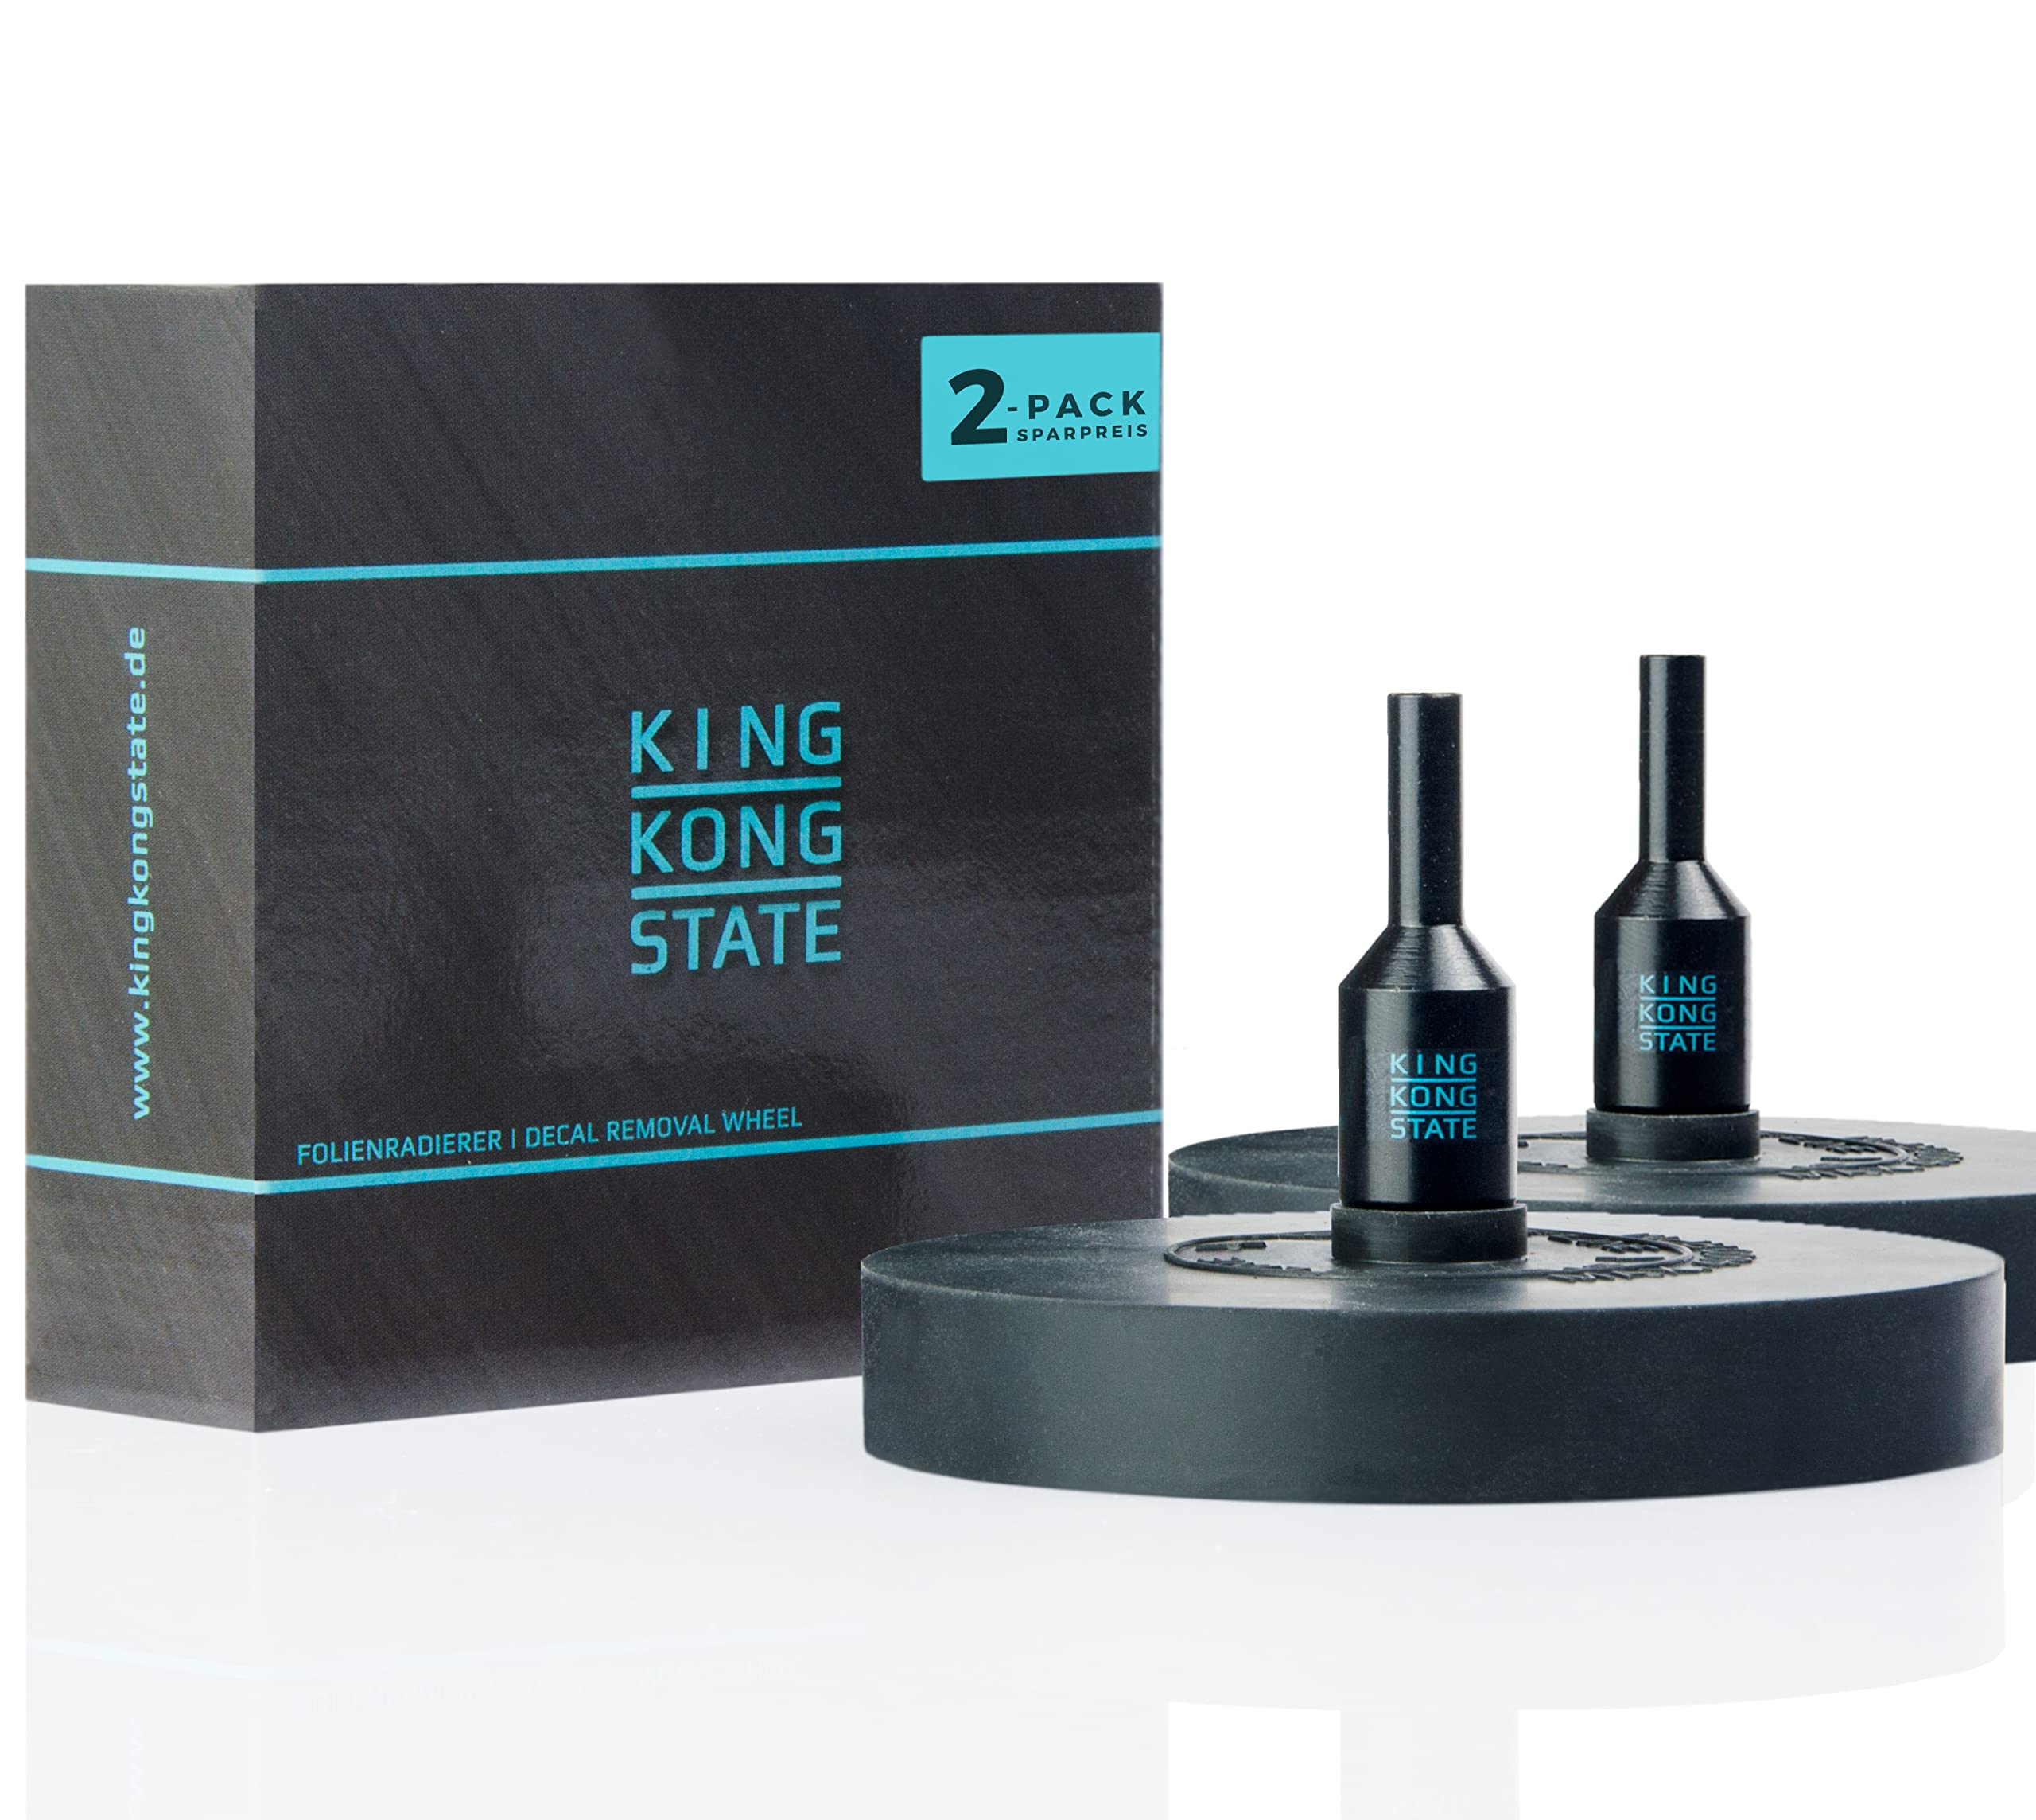 King Kong State Folienradierer 2-Pack zur Entfernung von Folien und Aufklebern auf Autos und Motorrädern - schwarzer Radierer für Akku-Bohrmaschinen